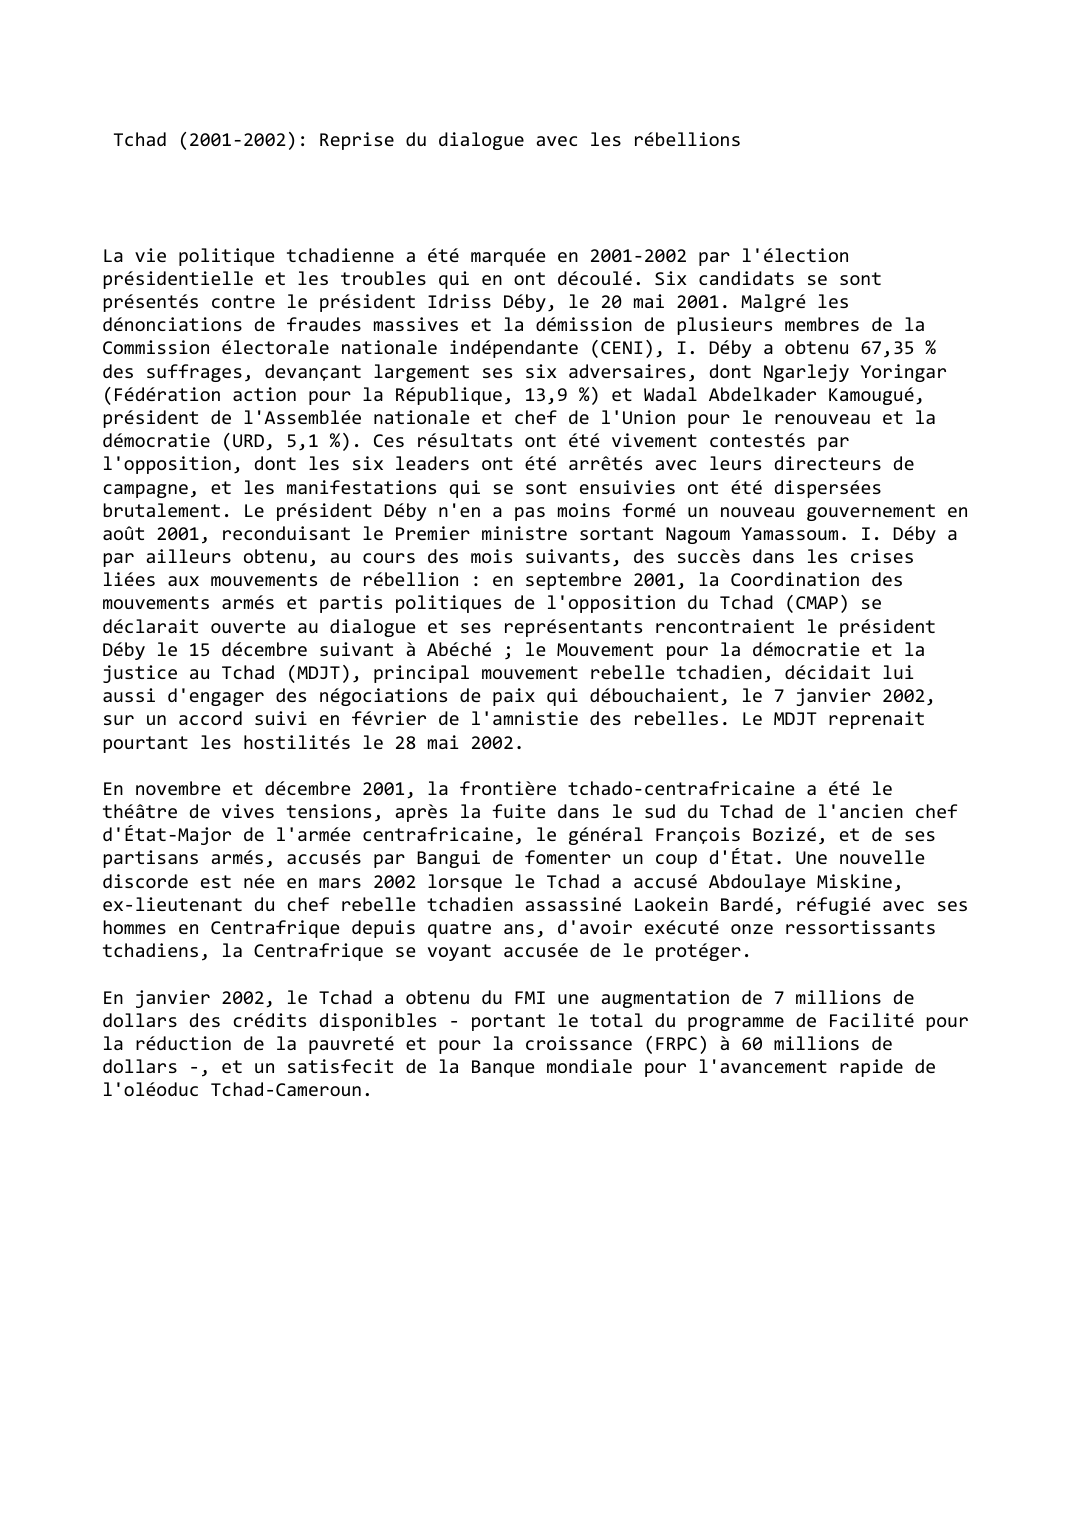 Prévisualisation du document Tchad (2001-2002): Reprise du dialogue avec les rébellions